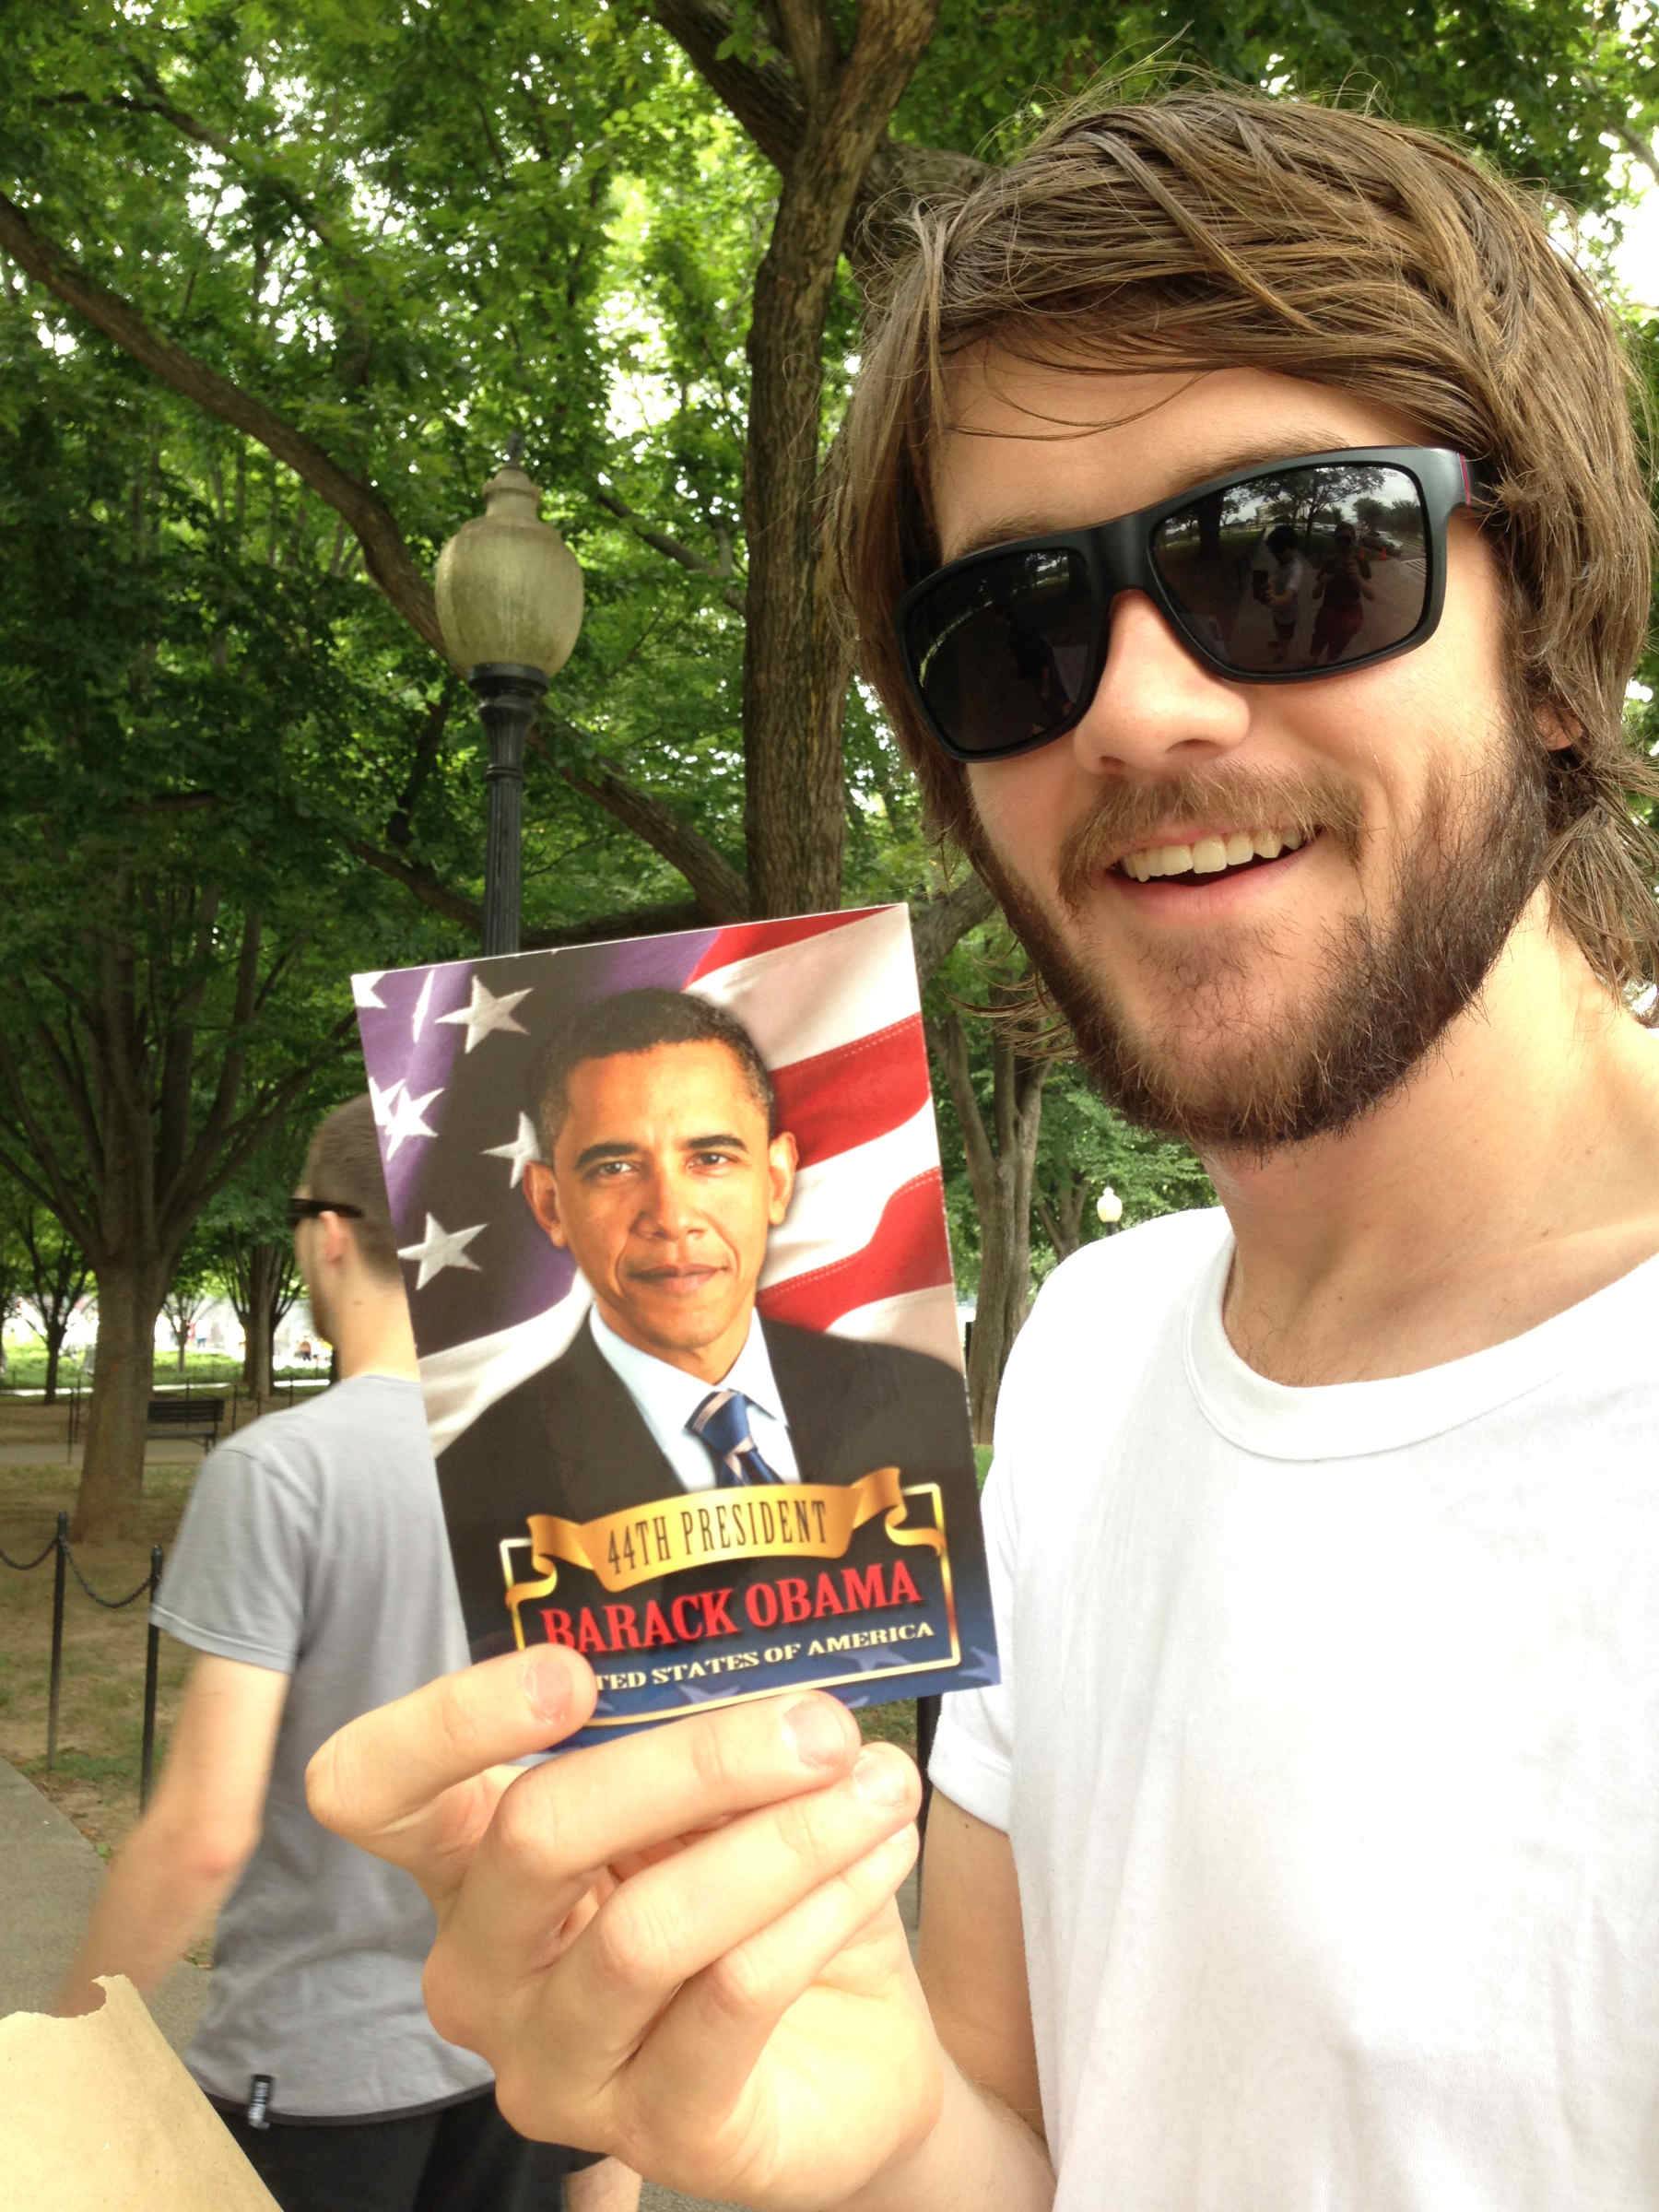 Butcher holding a Barack Obama postcard